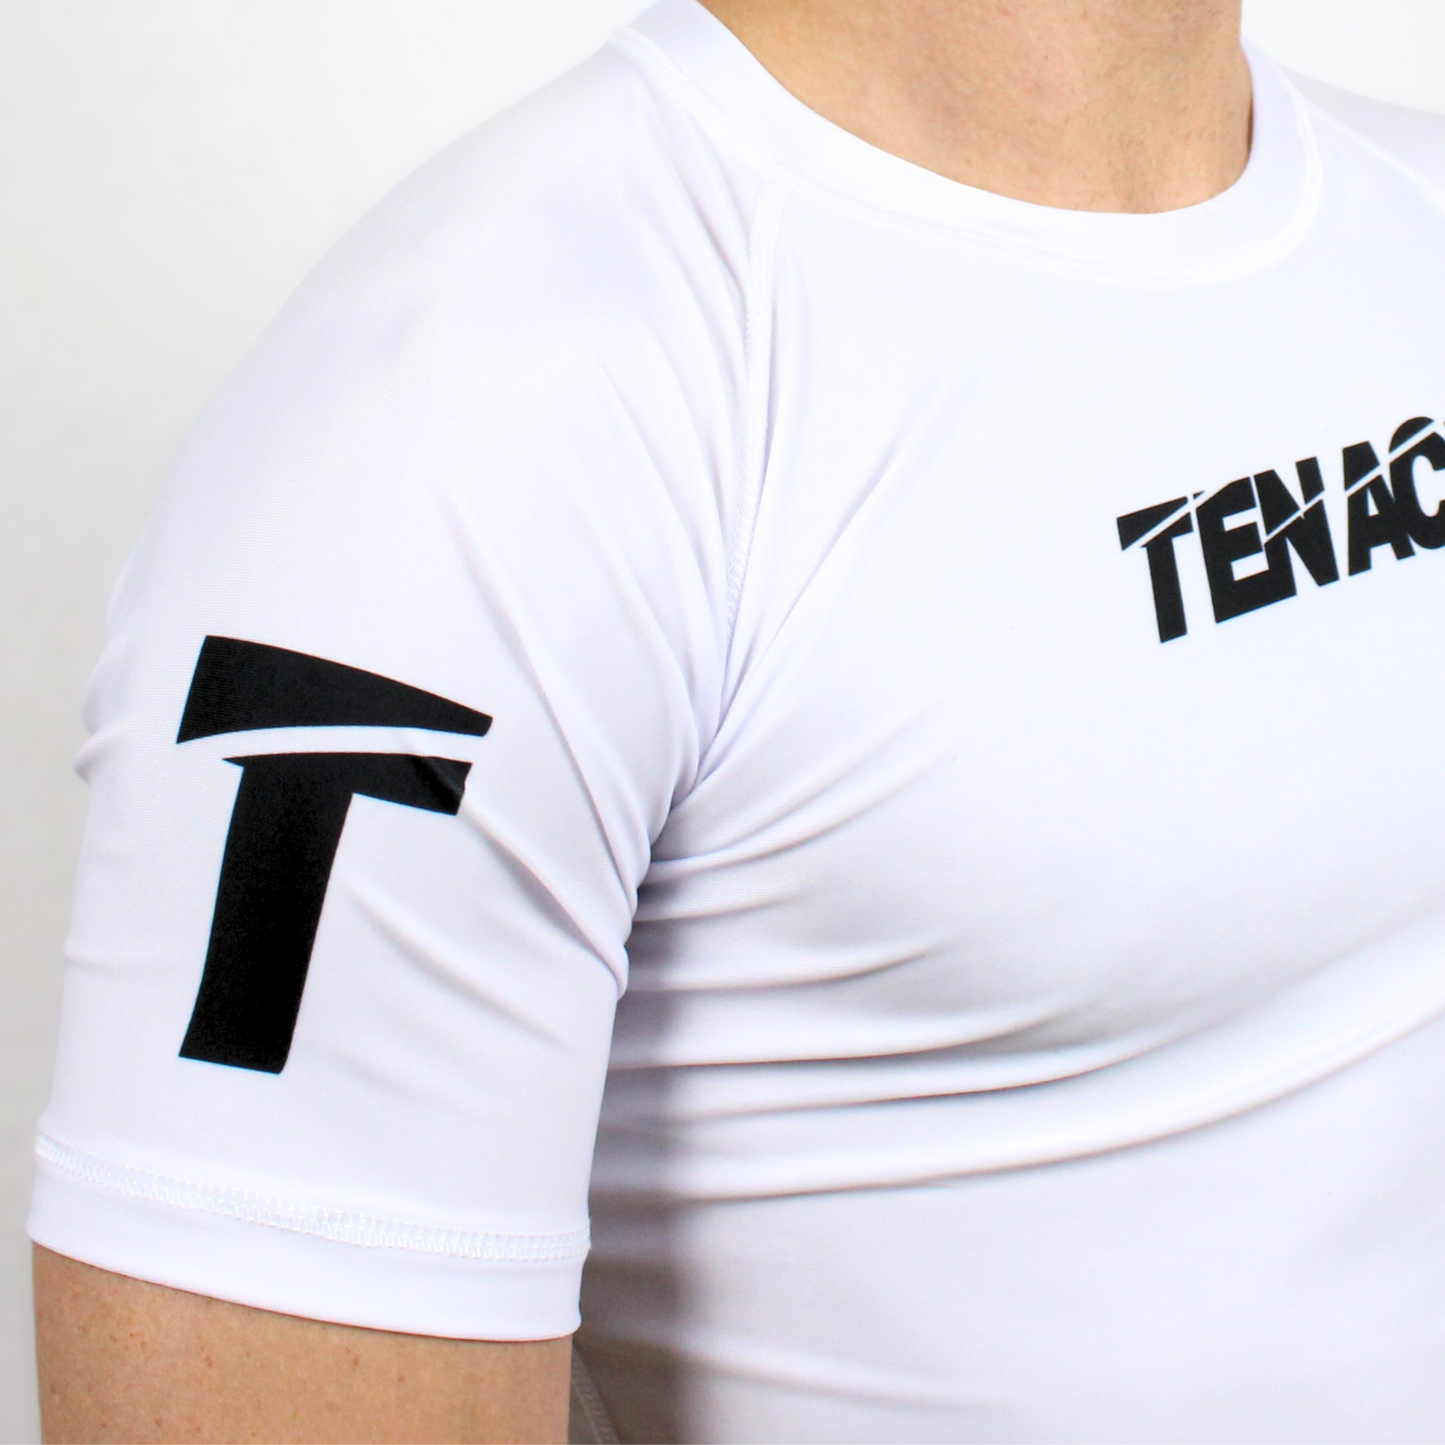 Tenace Basic Compression Shirt - White